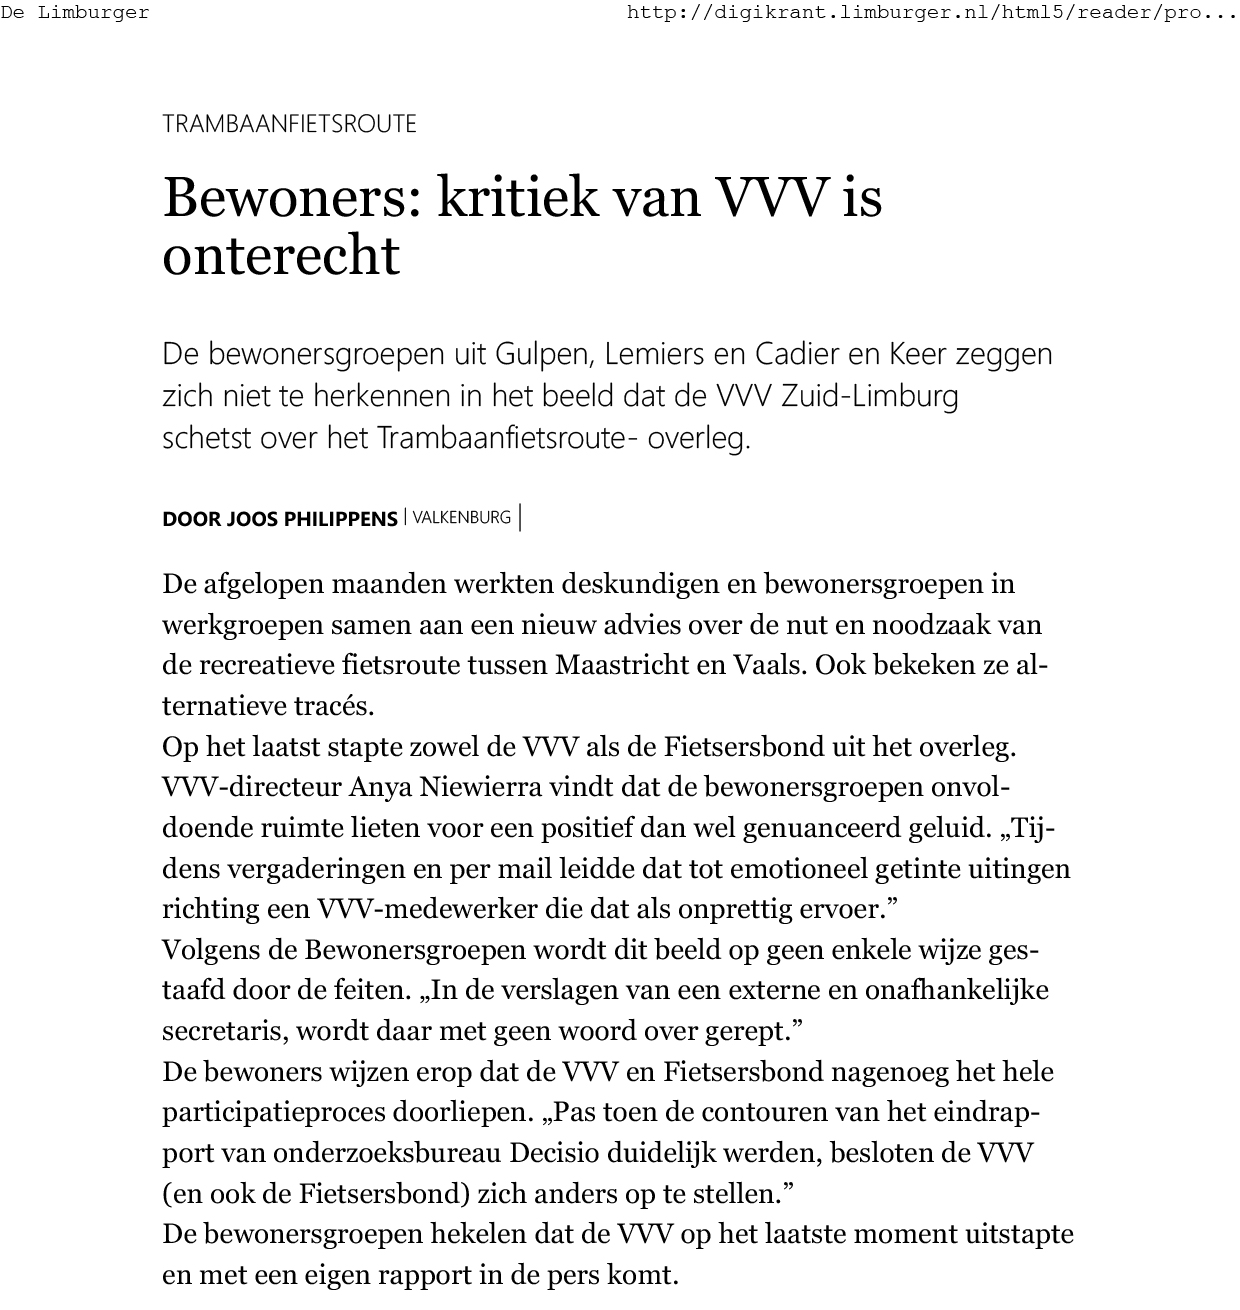 2018 11 03 Bewoners kritiek van VVV is onterecht